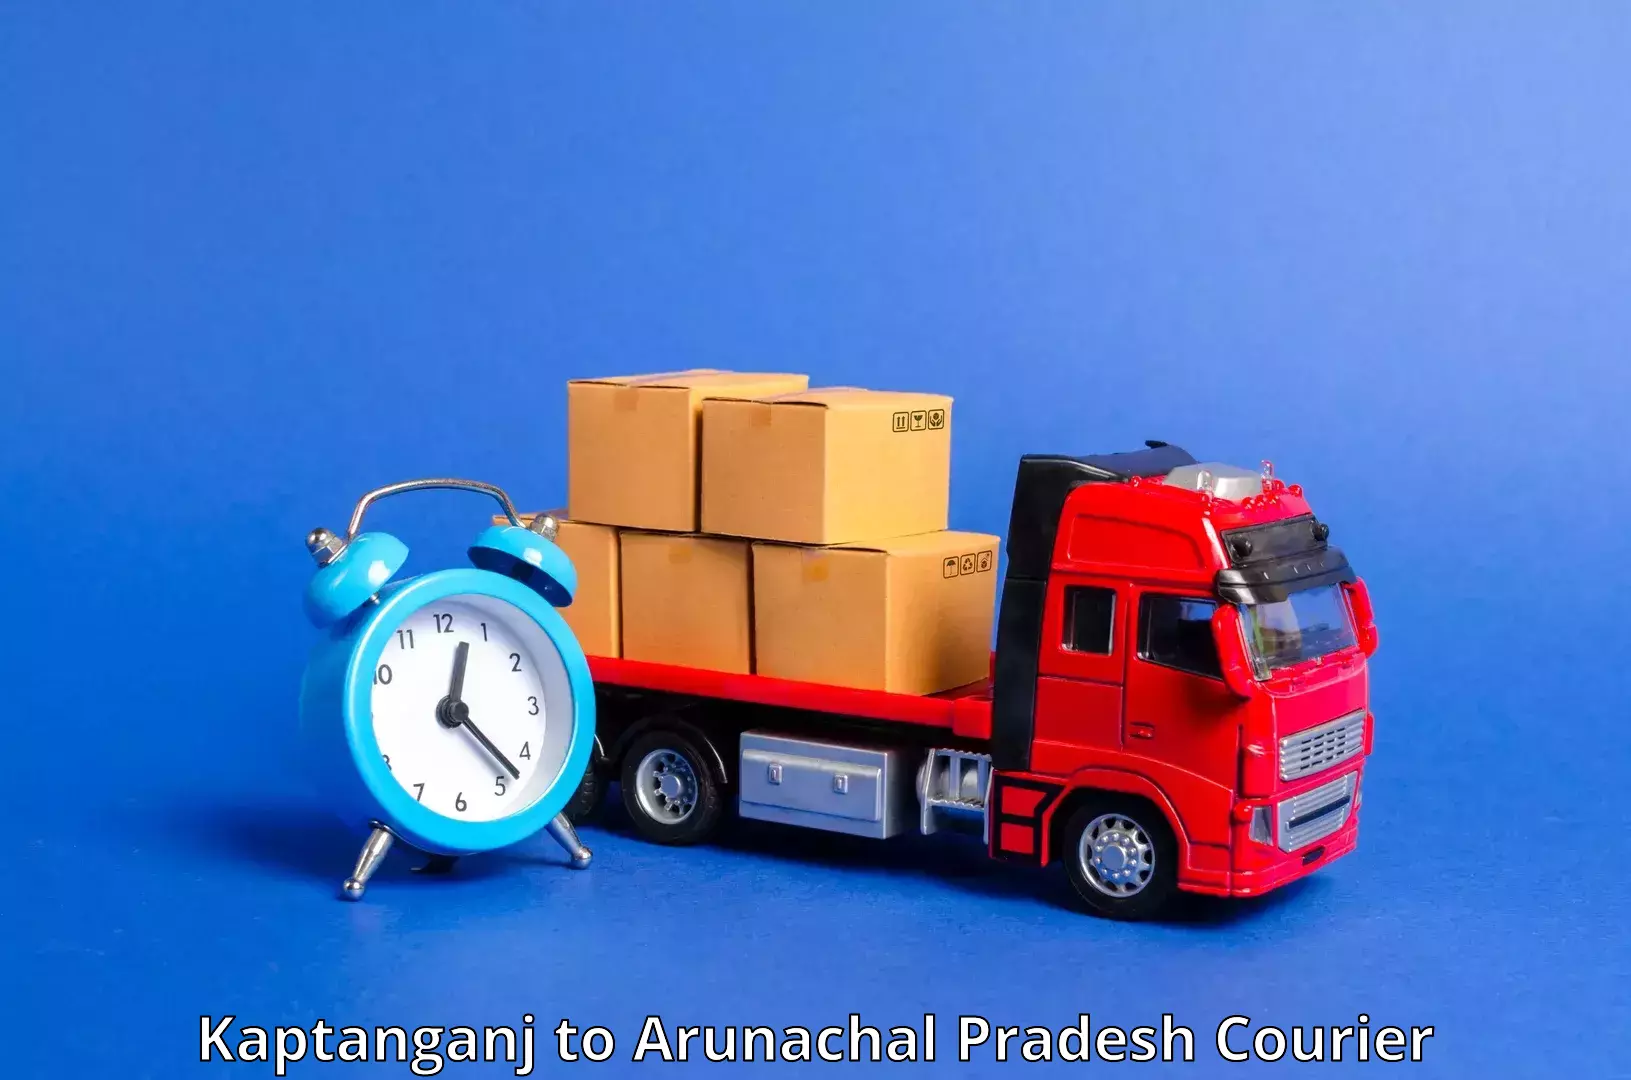 Professional courier handling Kaptanganj to Lohit